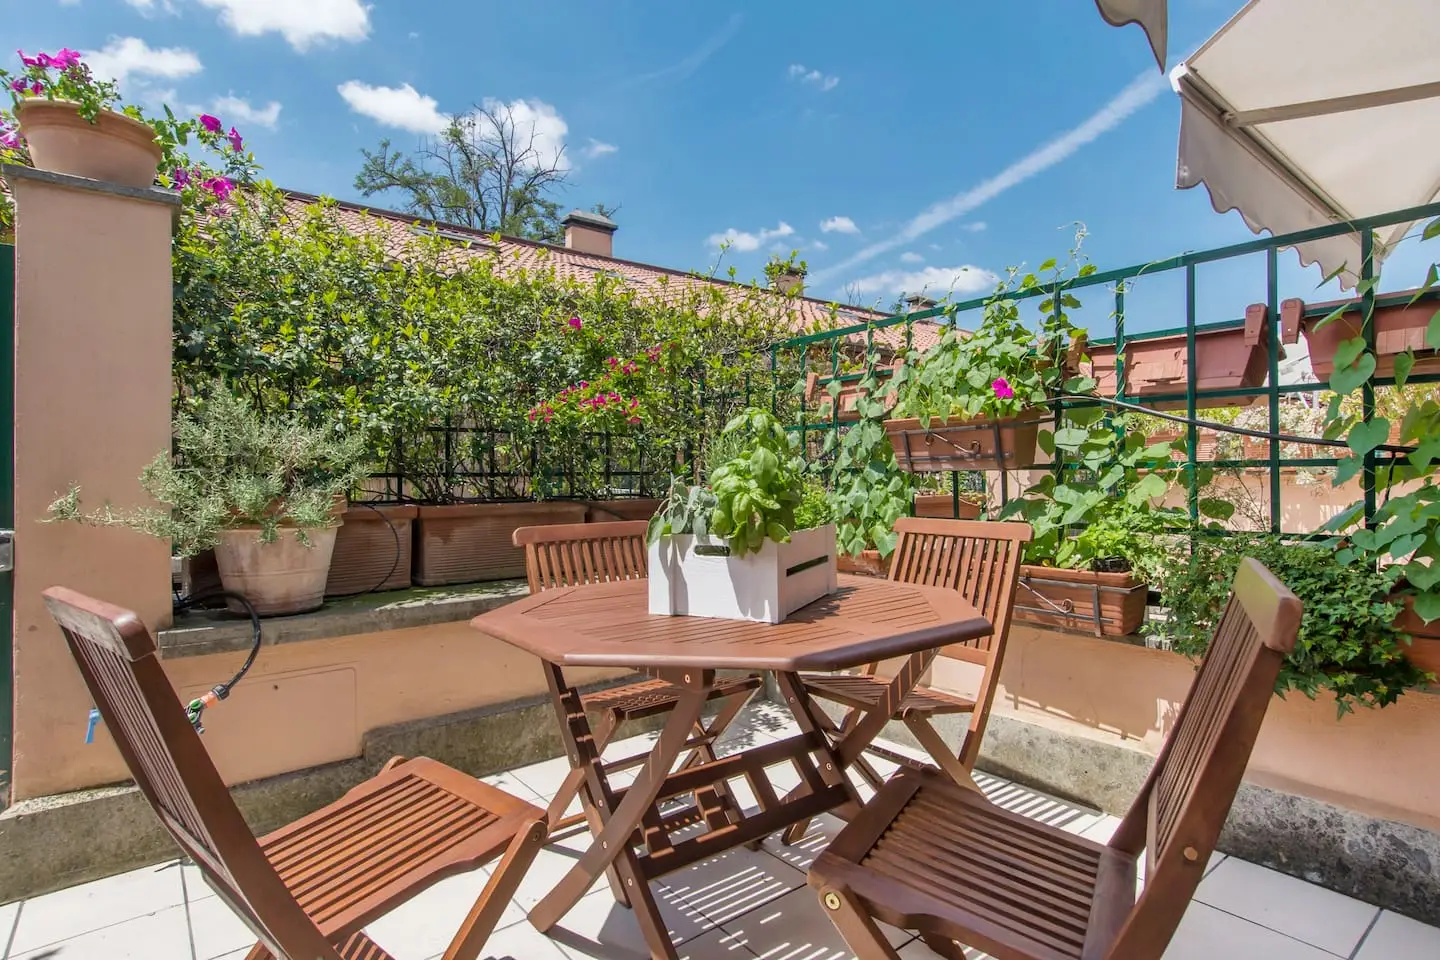 Location Rome Airbnb, Loft avec terrasse au coeur de Rome